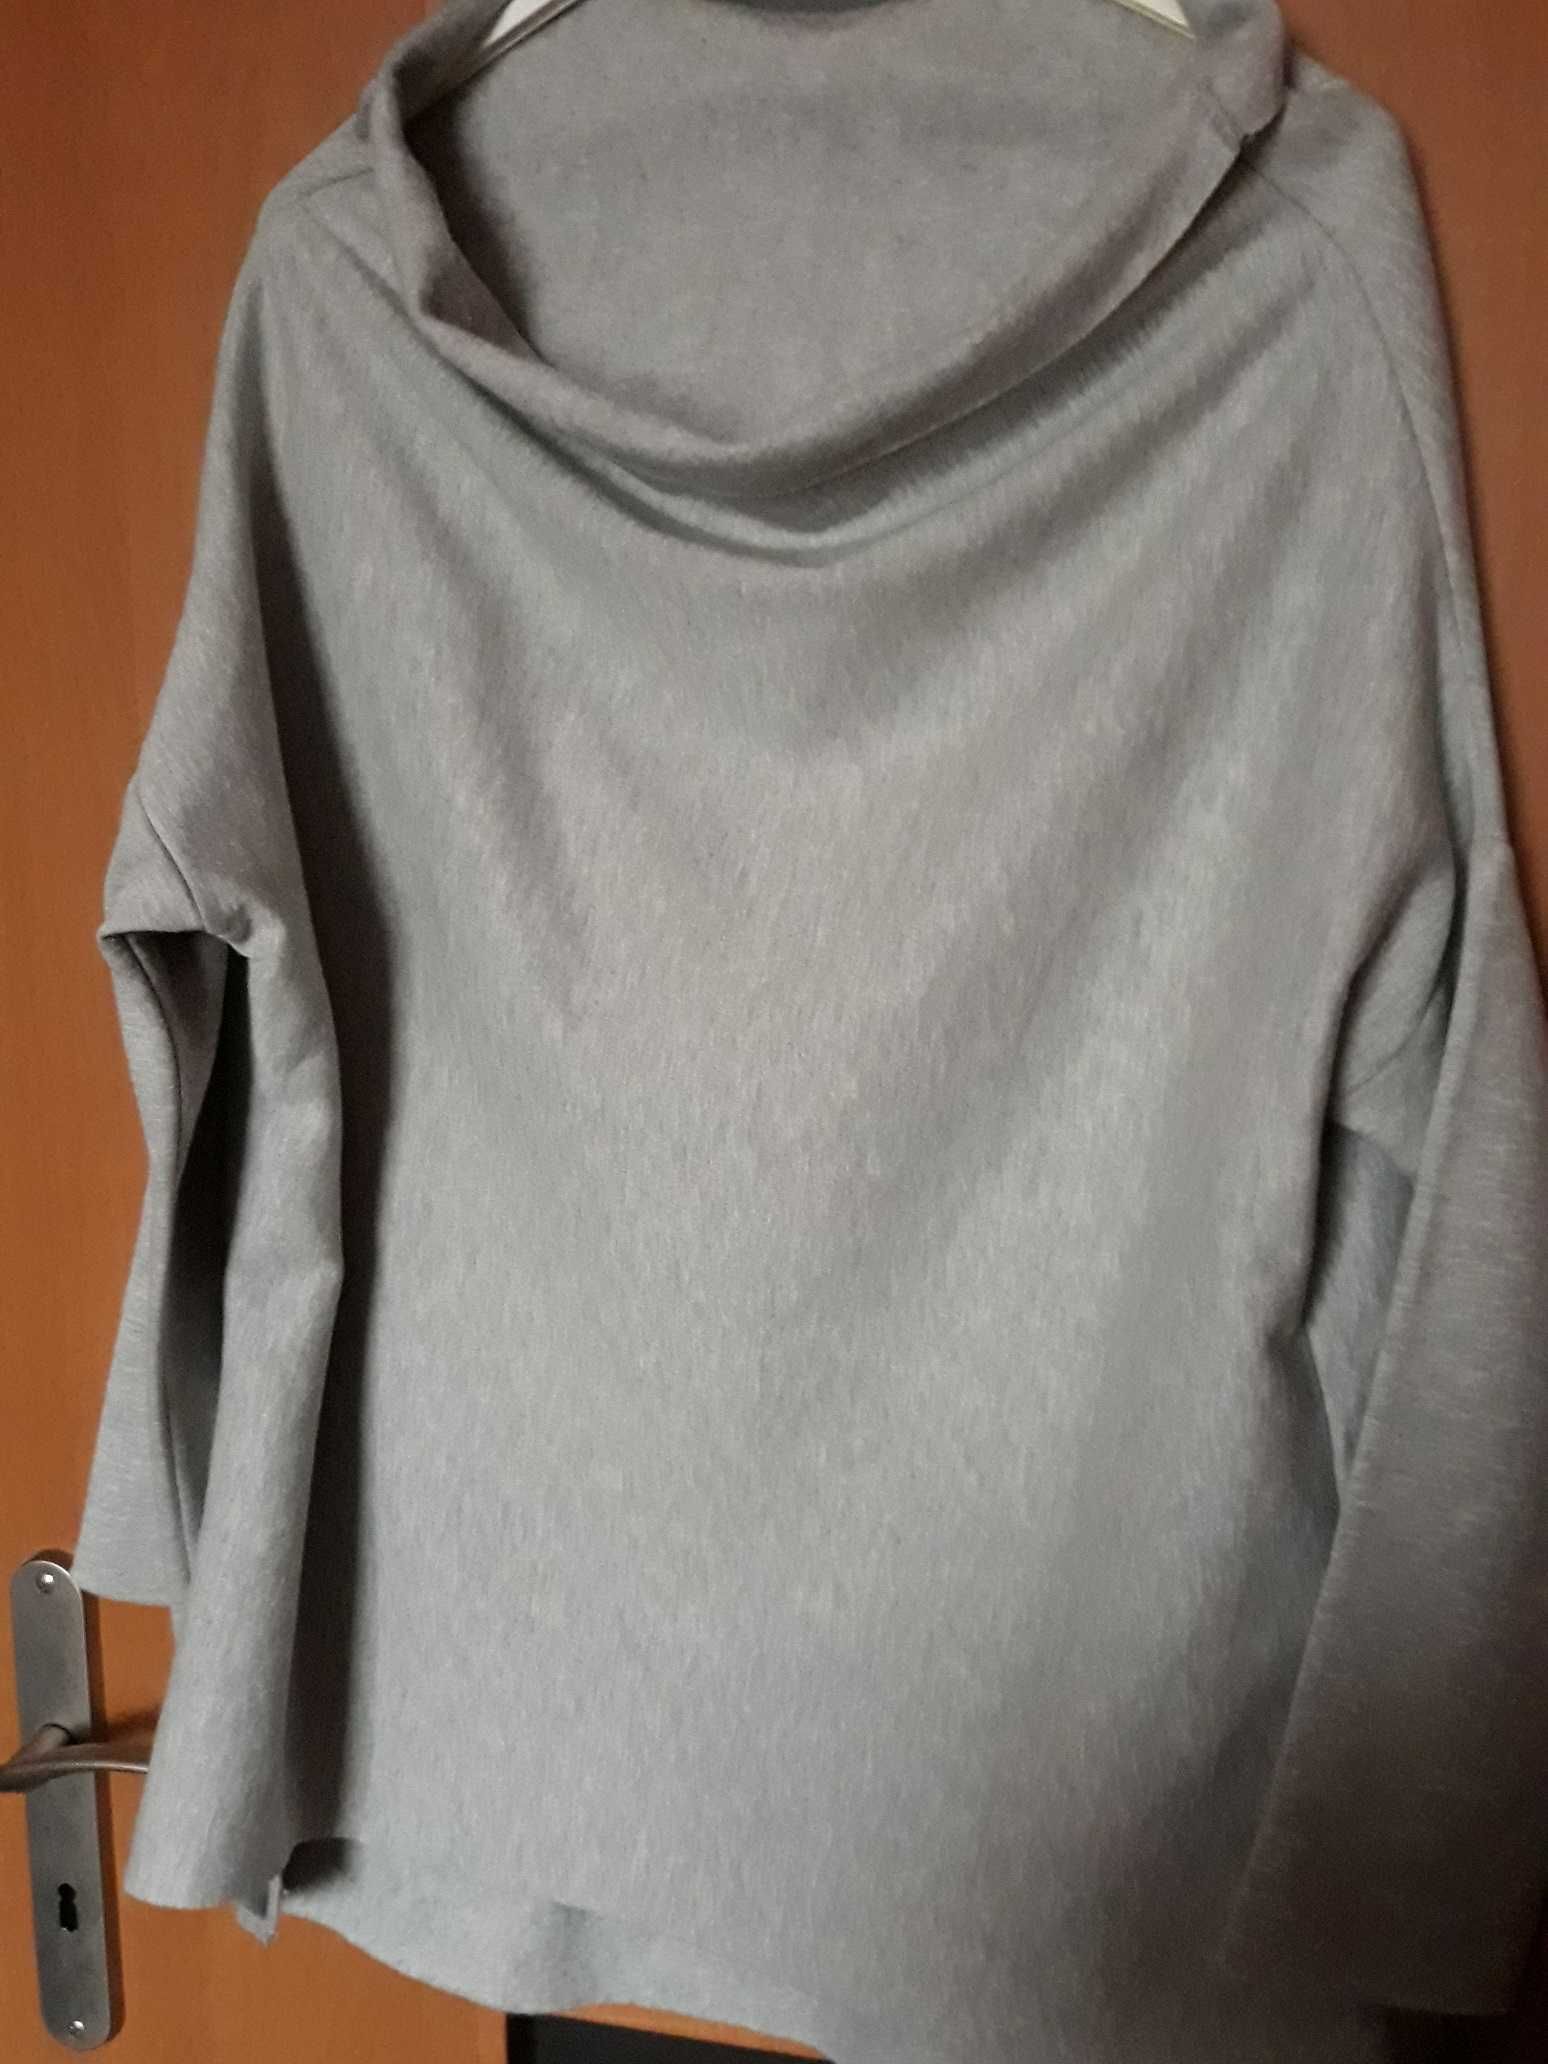 Bluza szara półgolf 100% bawełna jak nowa Awanti tył dłuższy rozmiar L